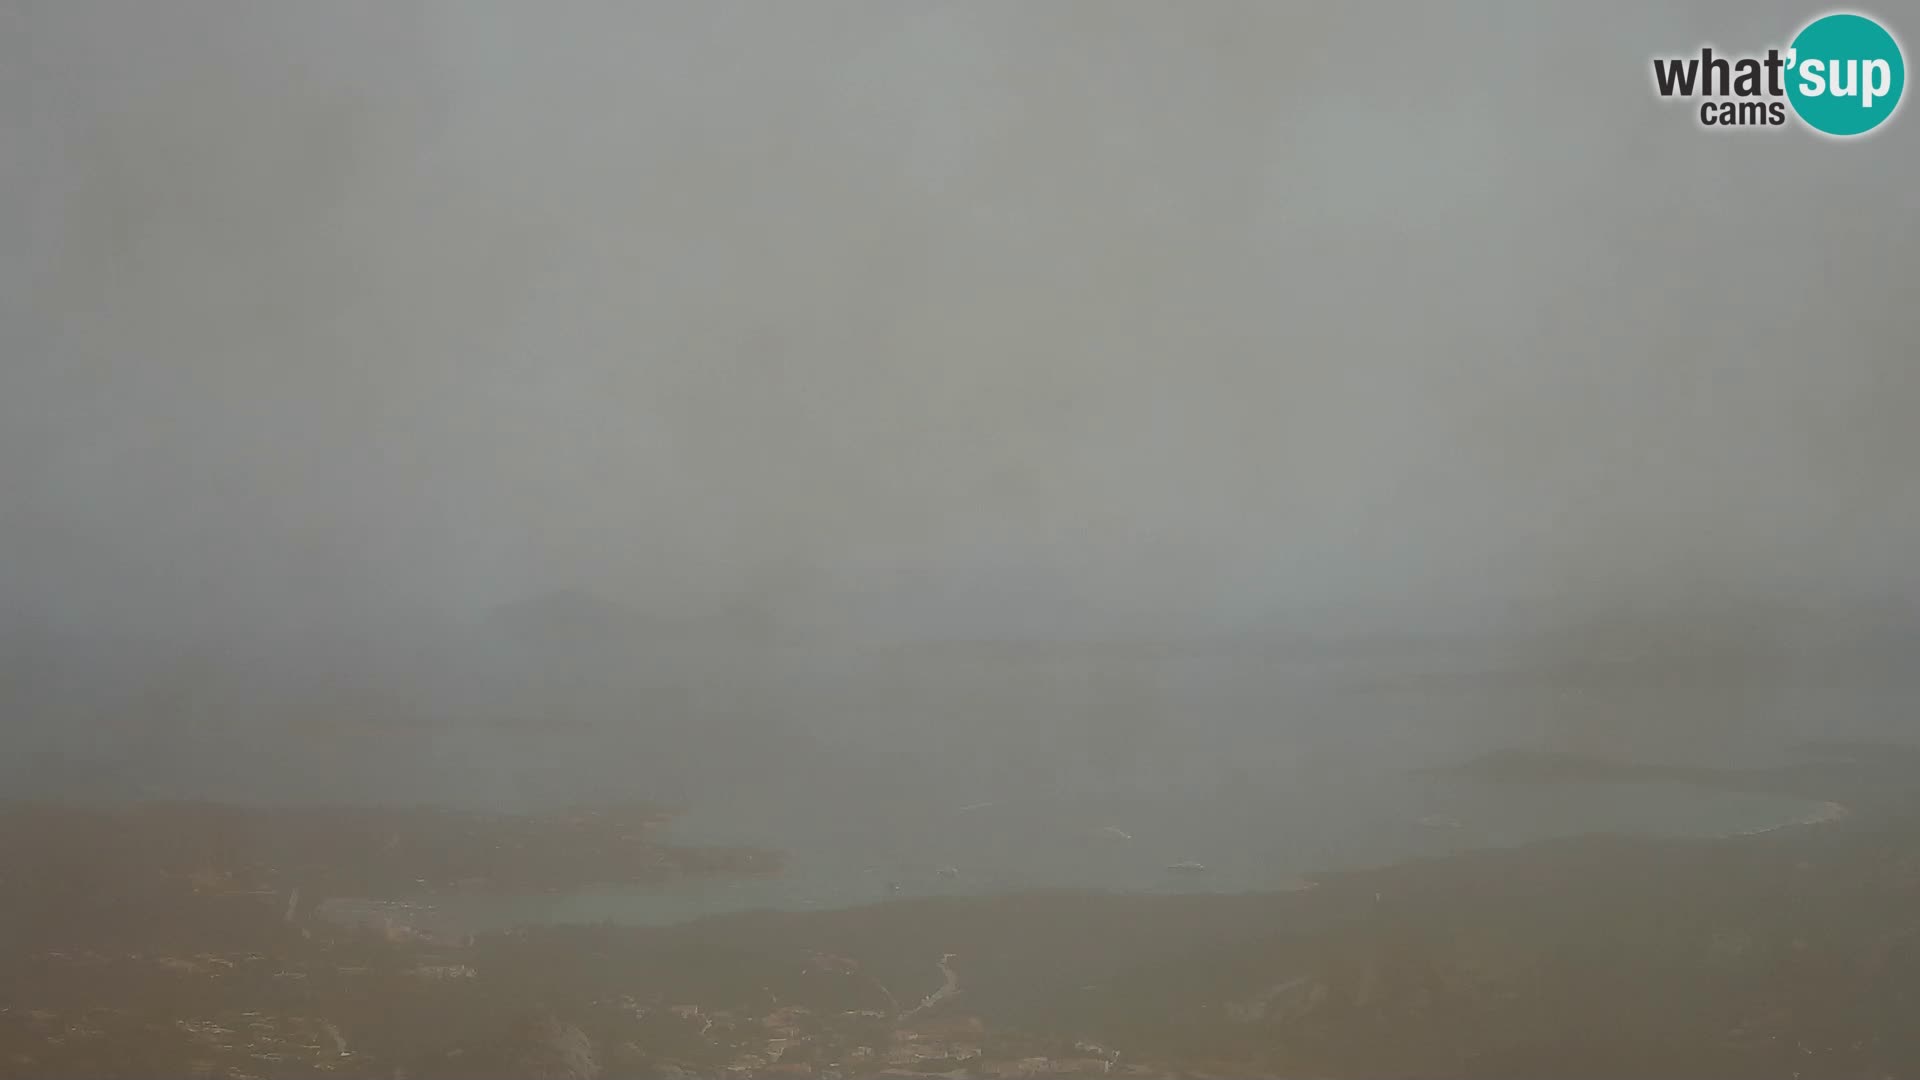 Monte Moro camera en vivo Costa Smeralda vista panorámica Cerdeña